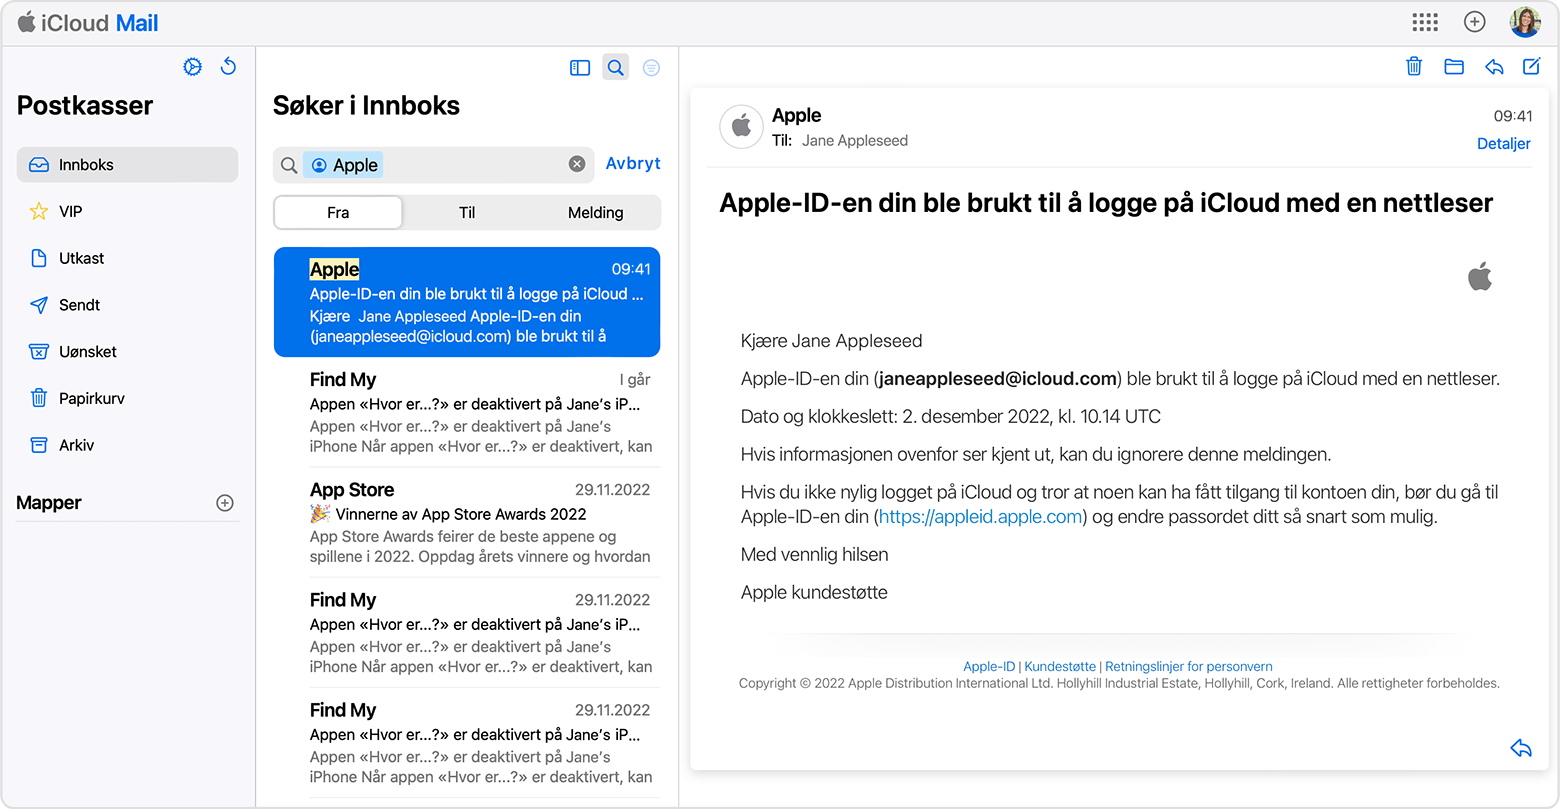 Søk etter e-poster fra Apple for å finne e-postadressen for Apple-ID-en